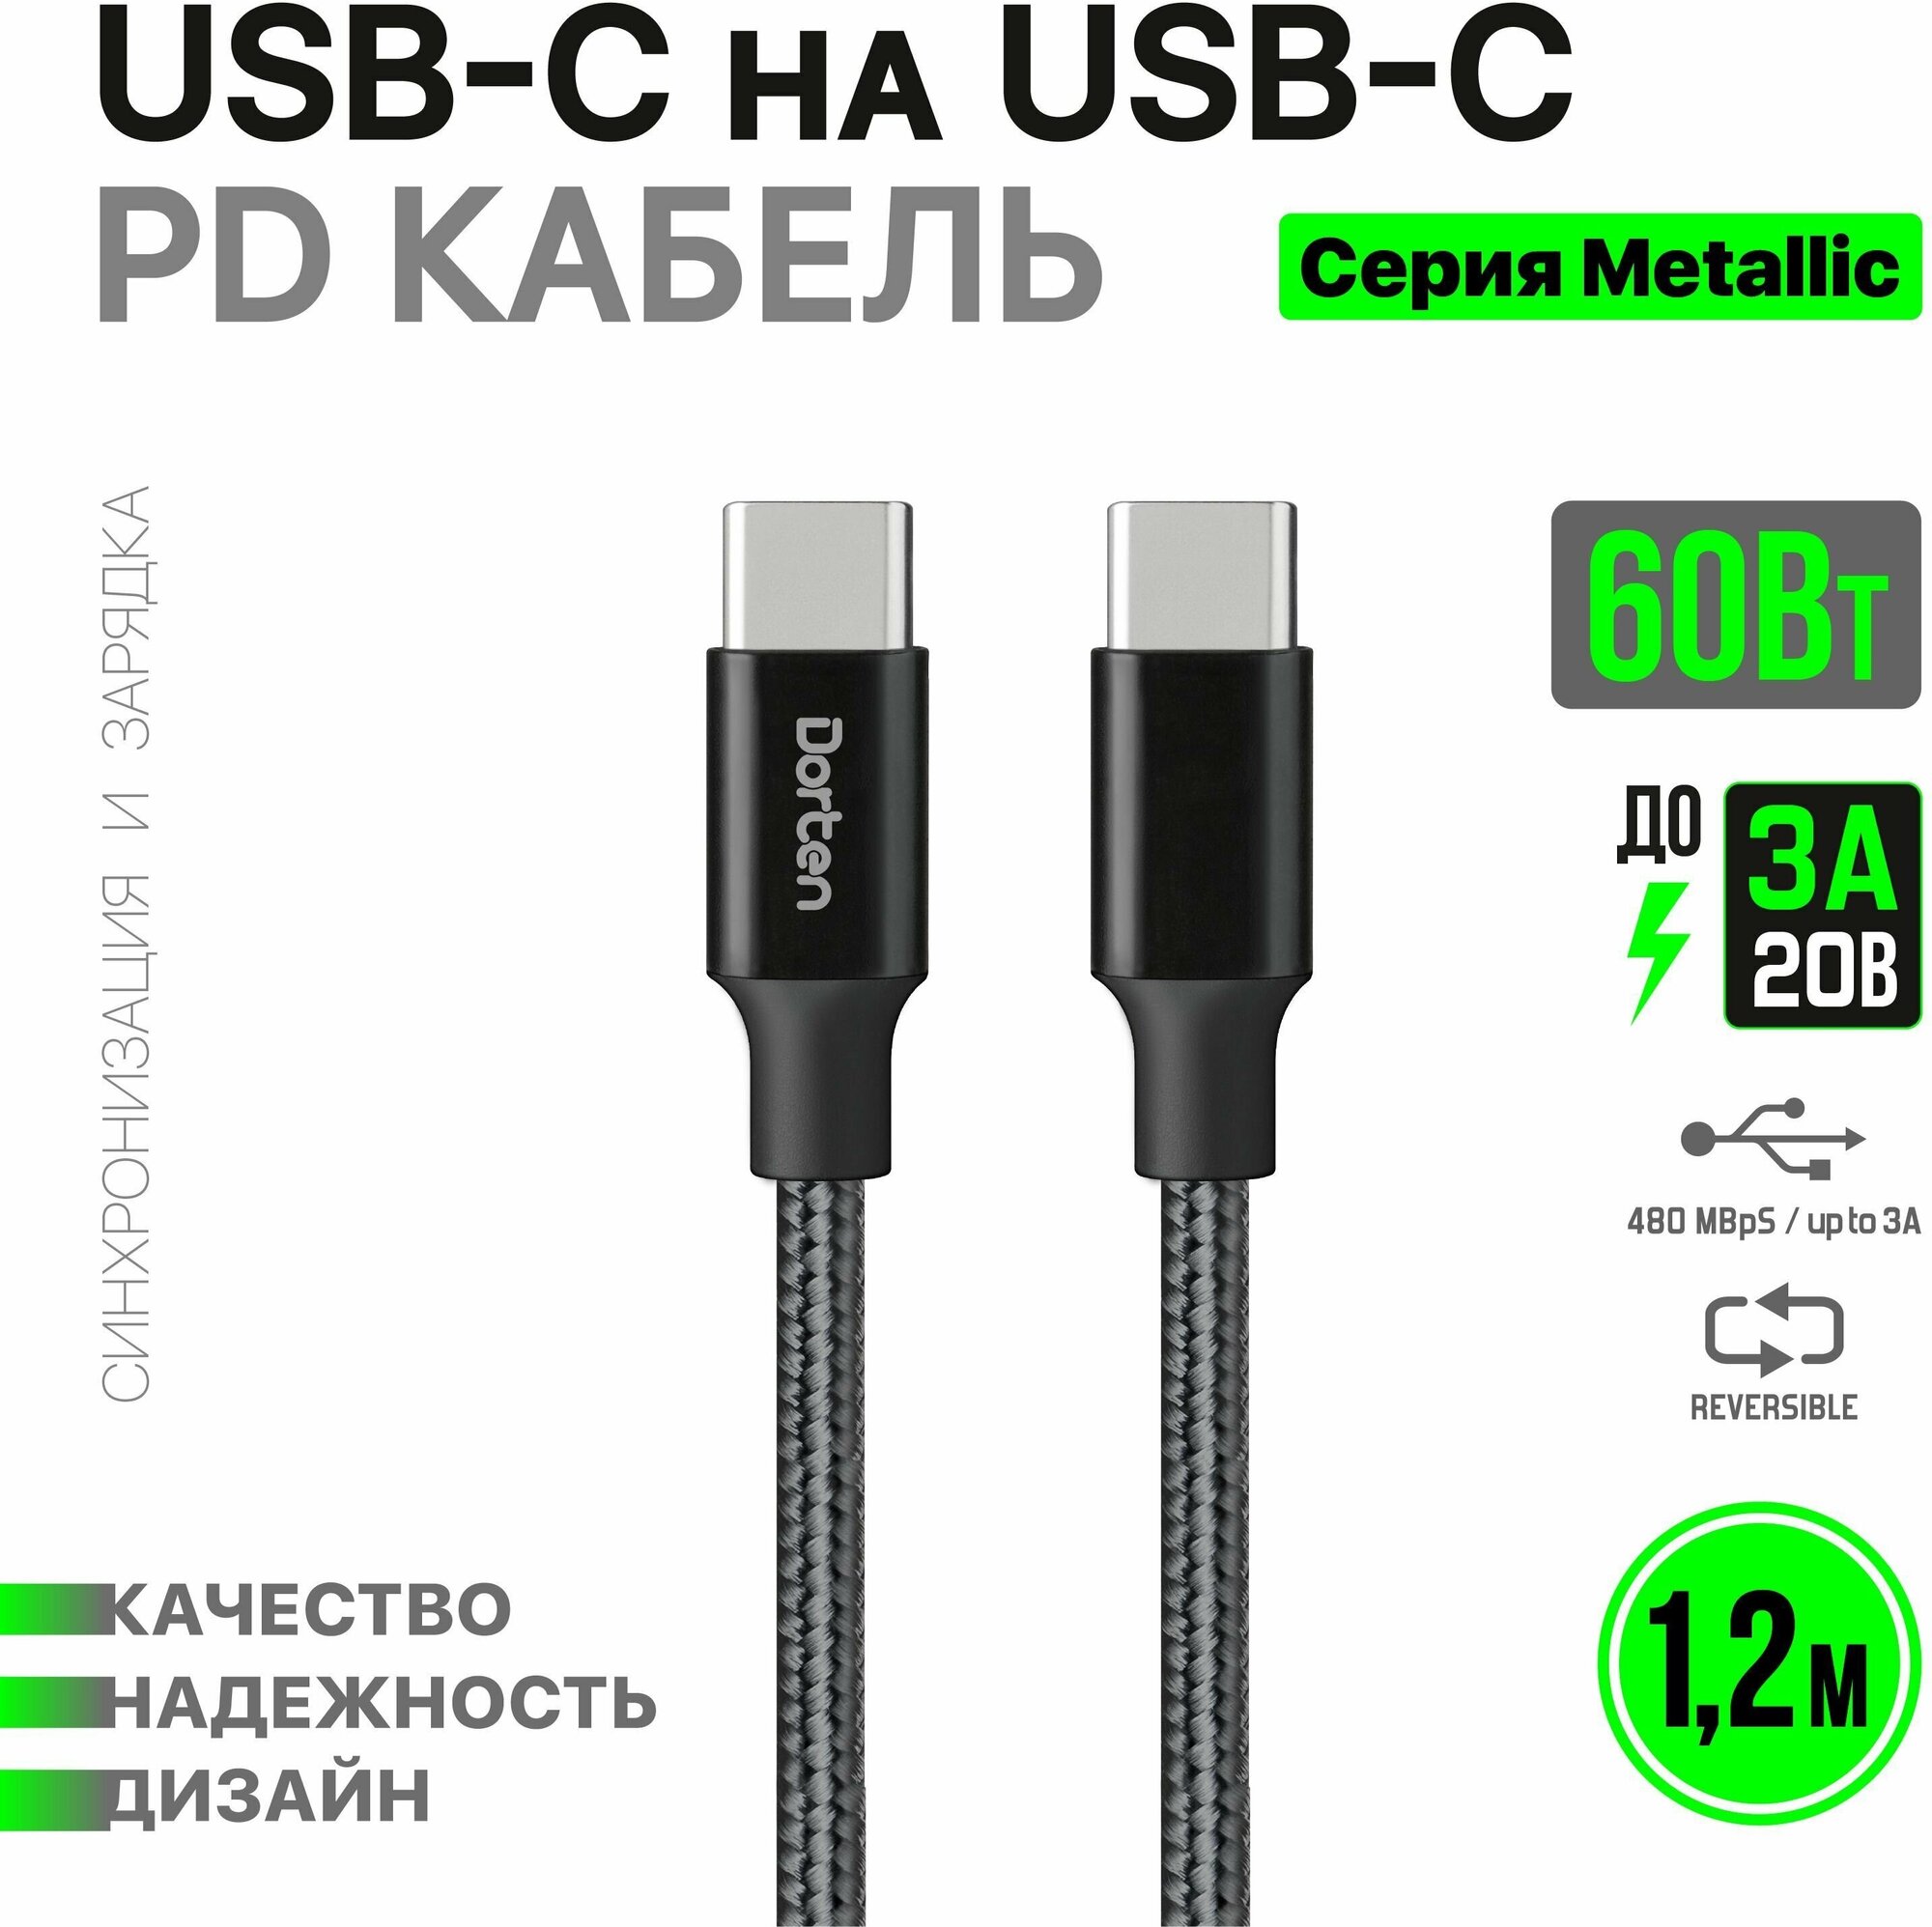 Кабель USB-C для зарядки телефона 60 Вт 1,2 метра: Metallic series провод юсб 1,2м - Черный